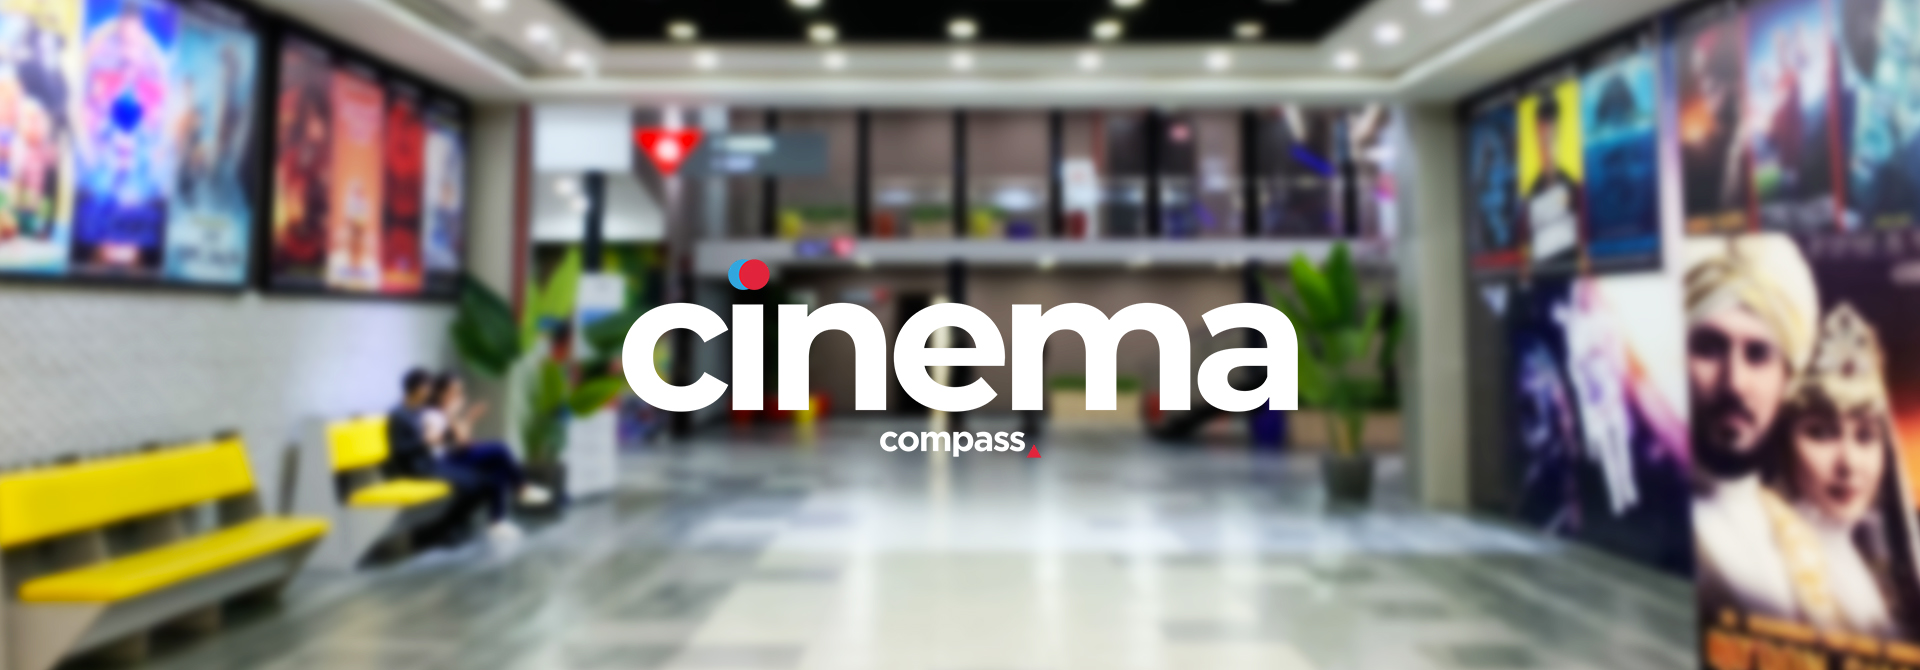 Кинотеатр «Compass Cinema - Малый Зал №3» в Ташкенте - расписание фильмов, афиша кино, адрес, телефоны и другие контакты